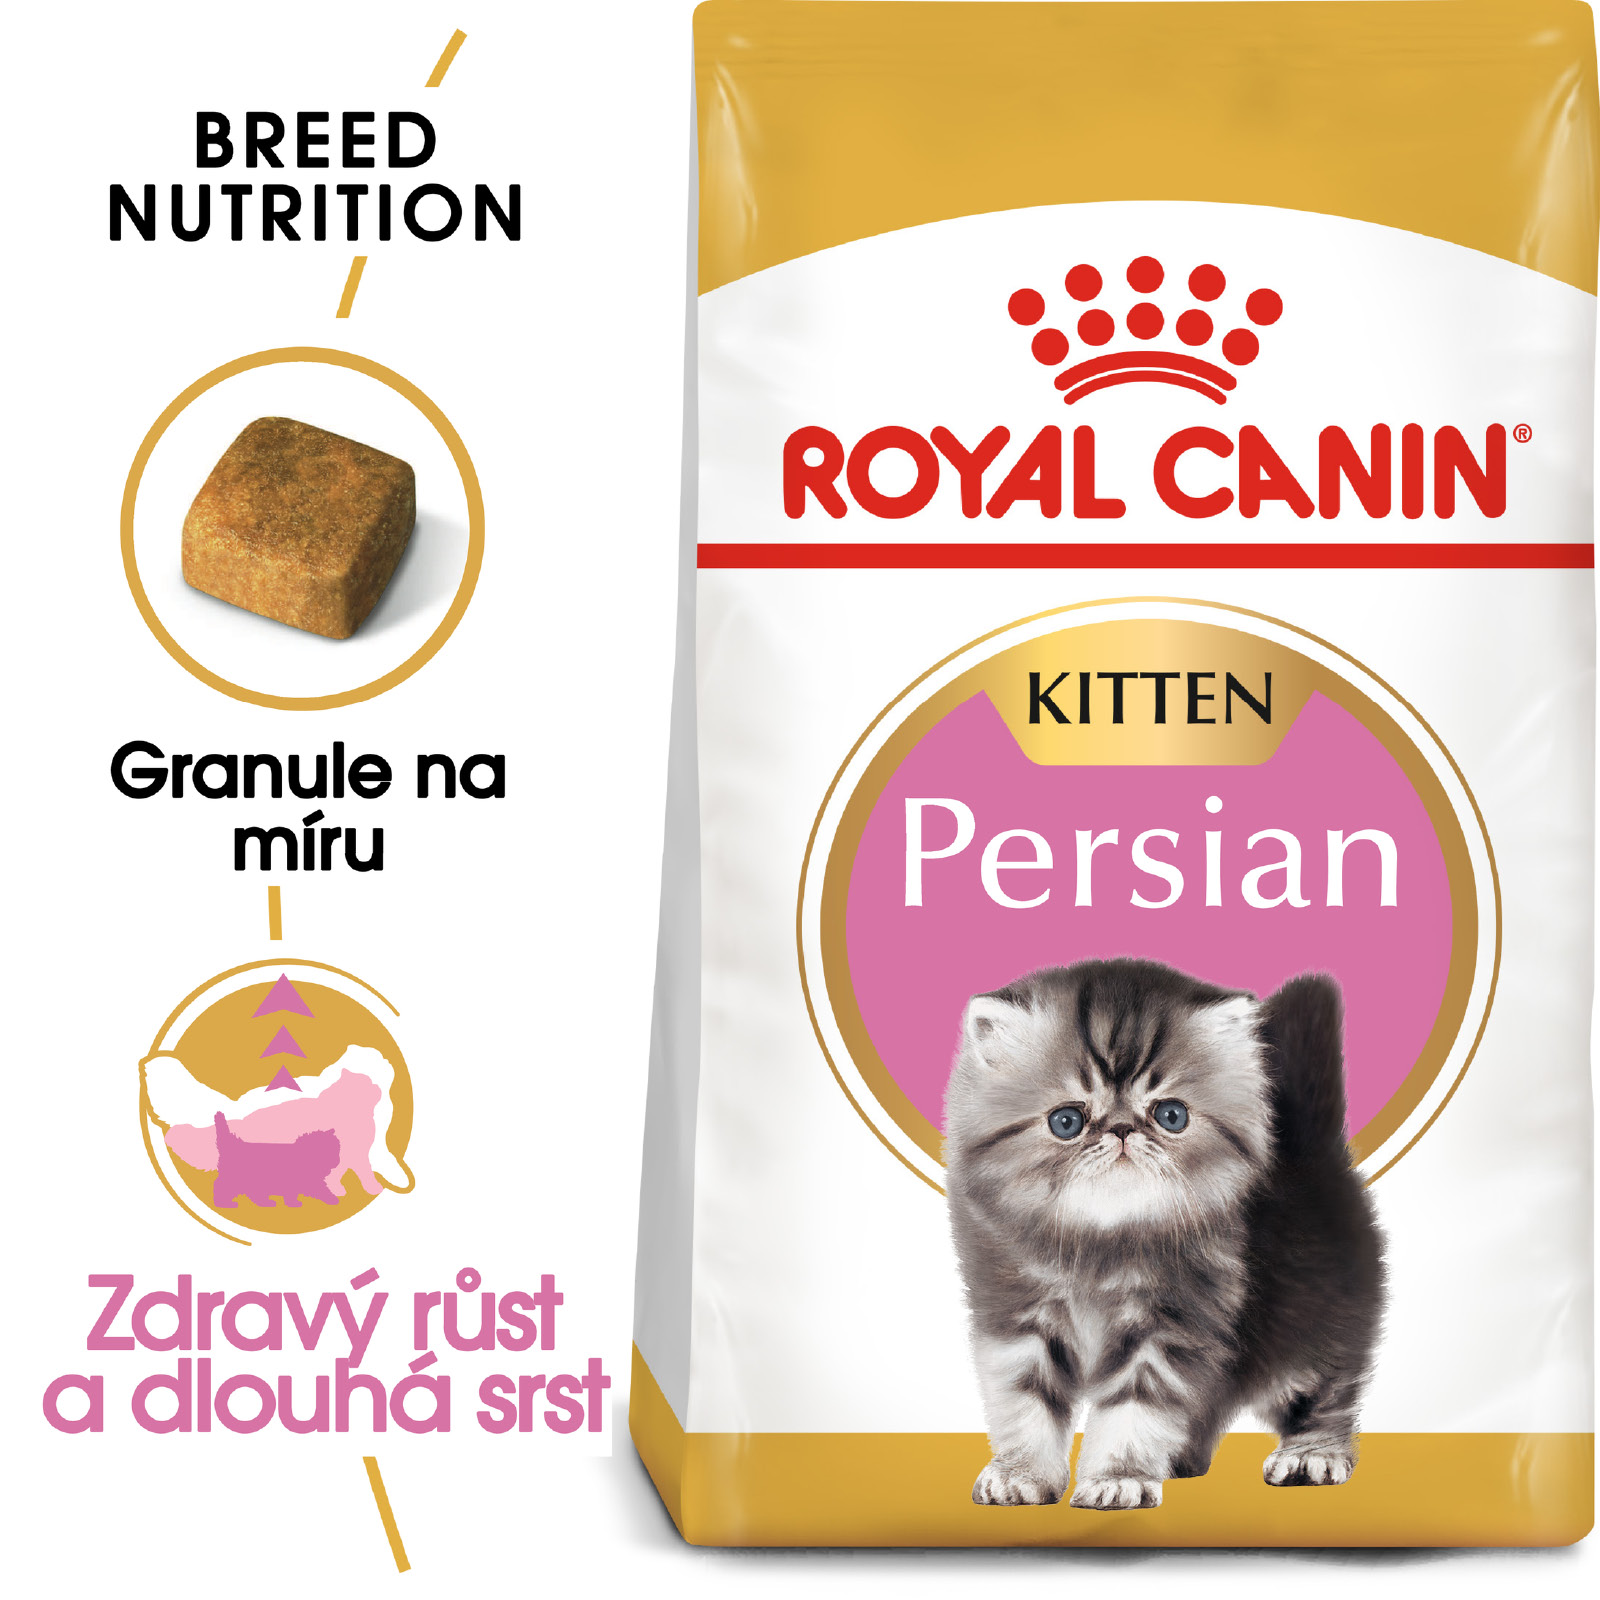 Royal Canin KITTEN PERSKÁ - granule pro perská koťata - 400g